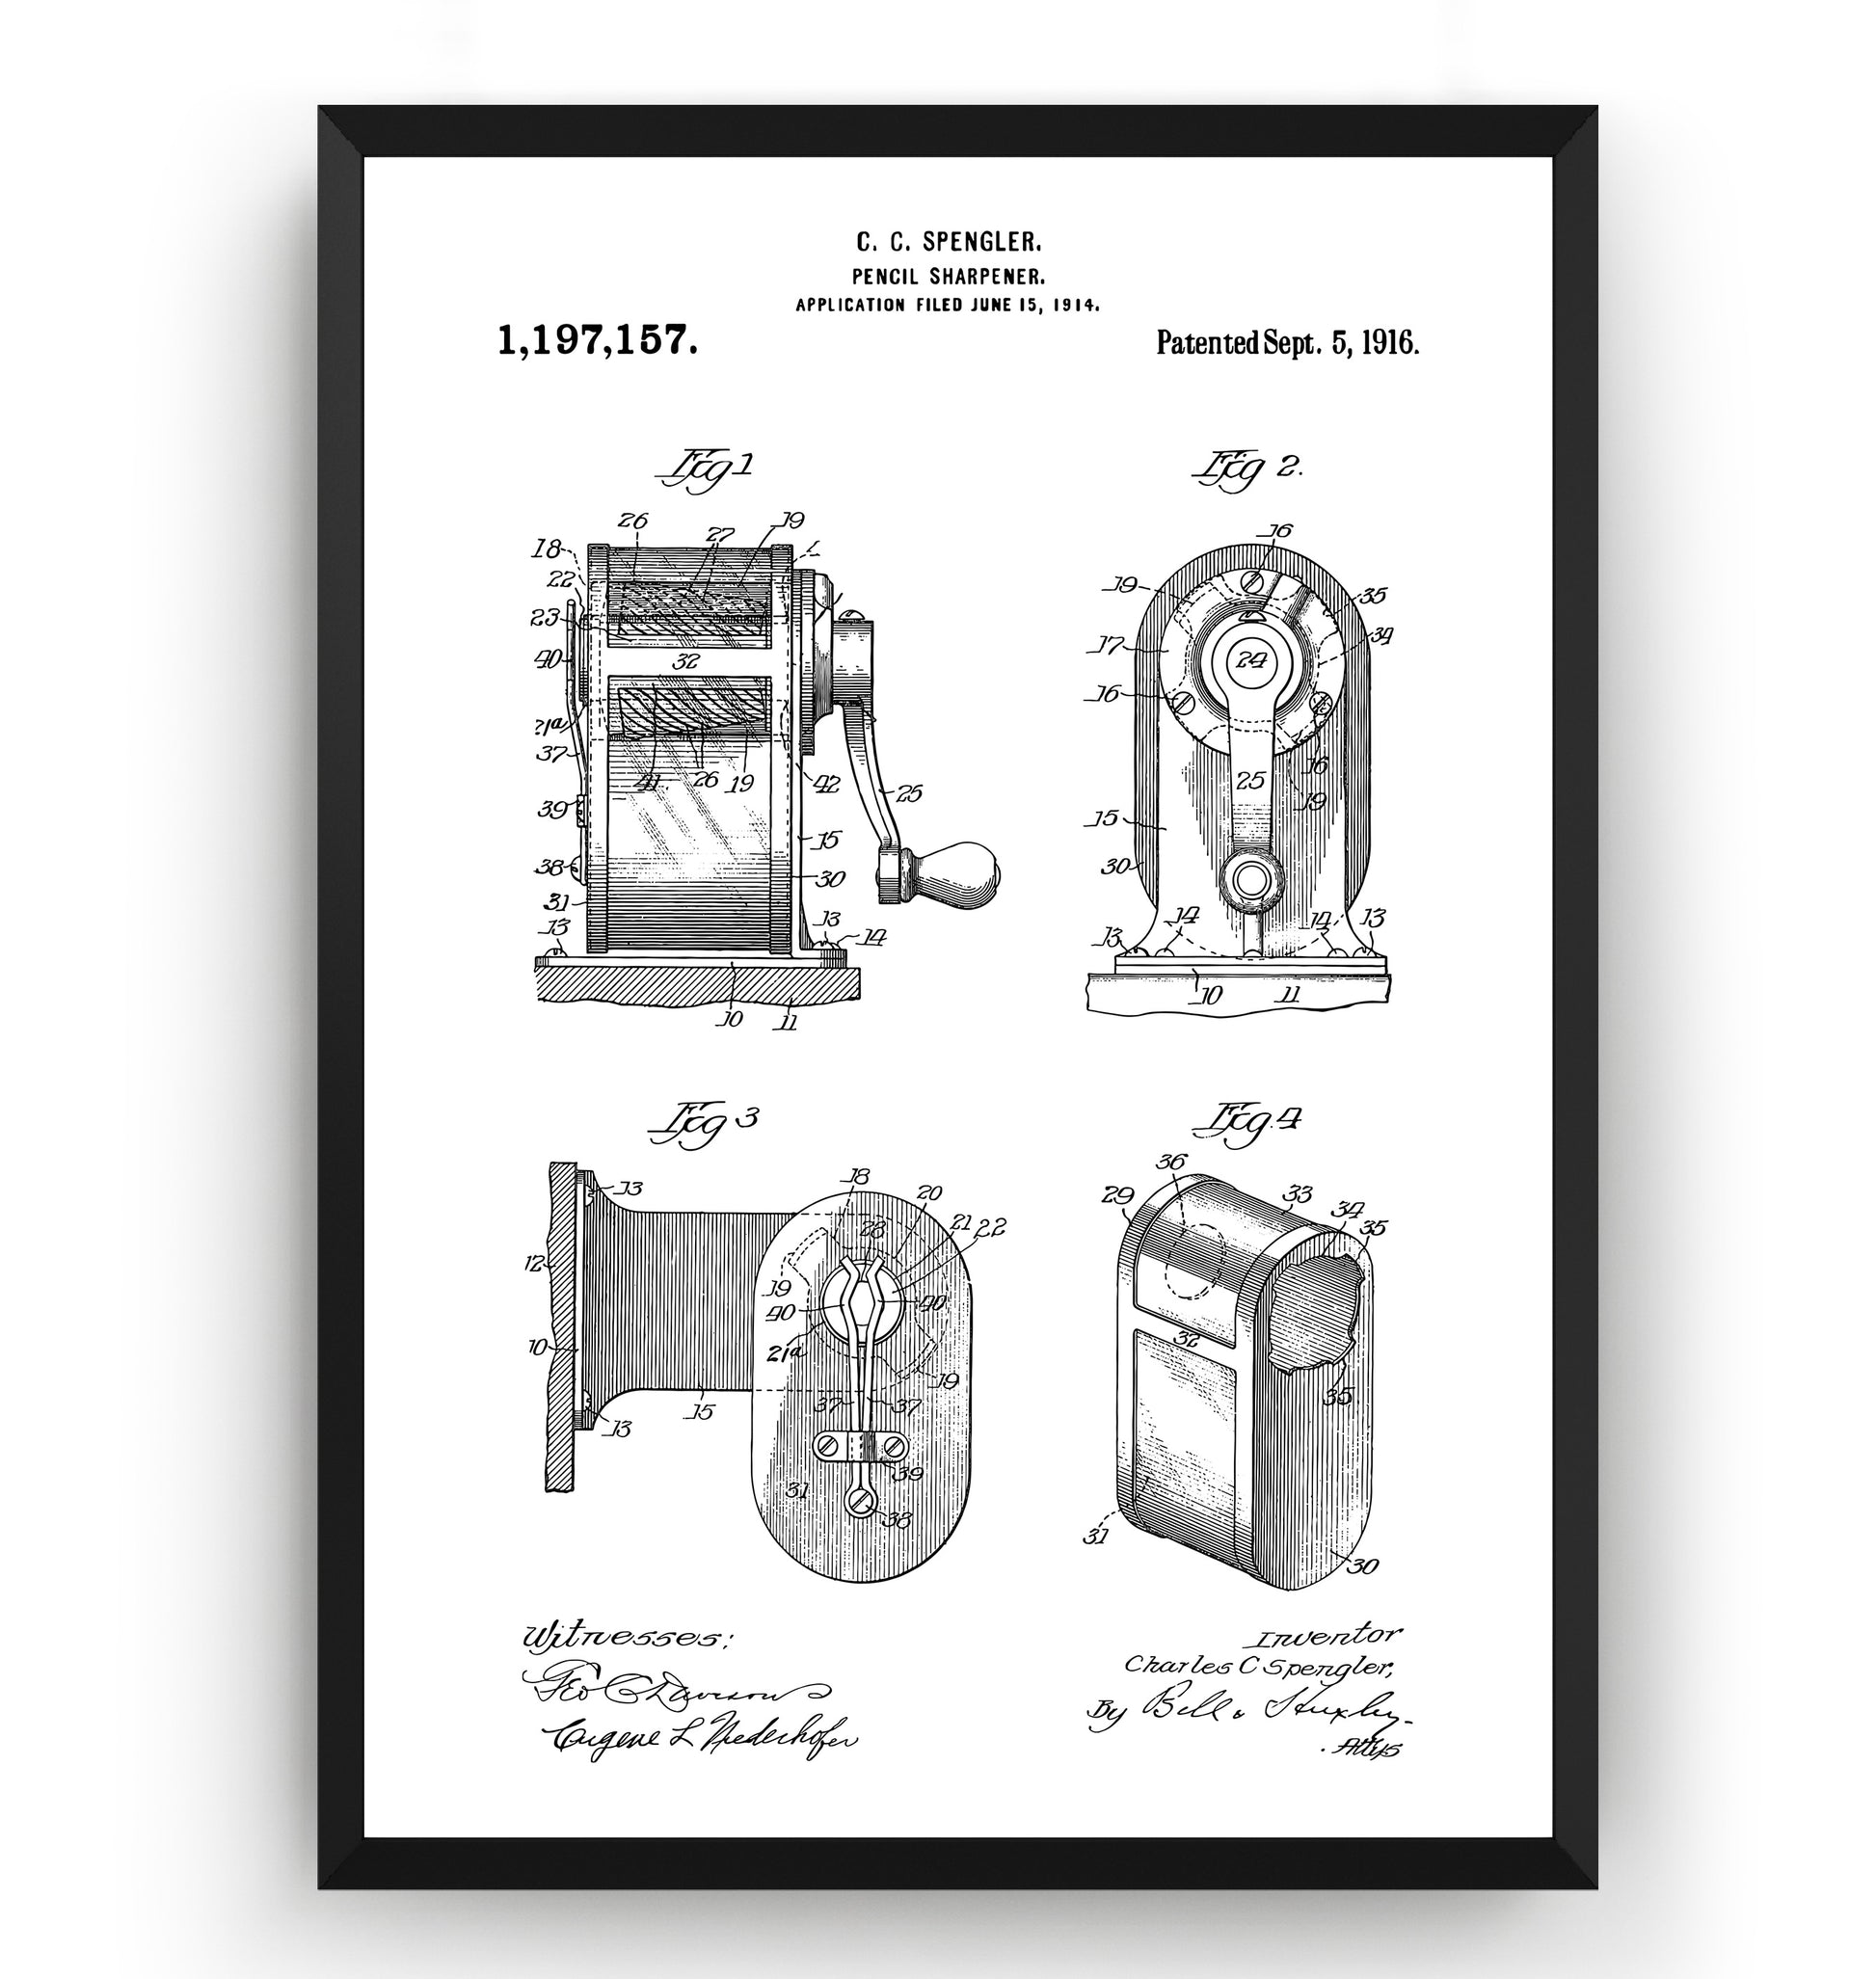 Pencil Sharpener 1914 Patent Print - Magic Posters